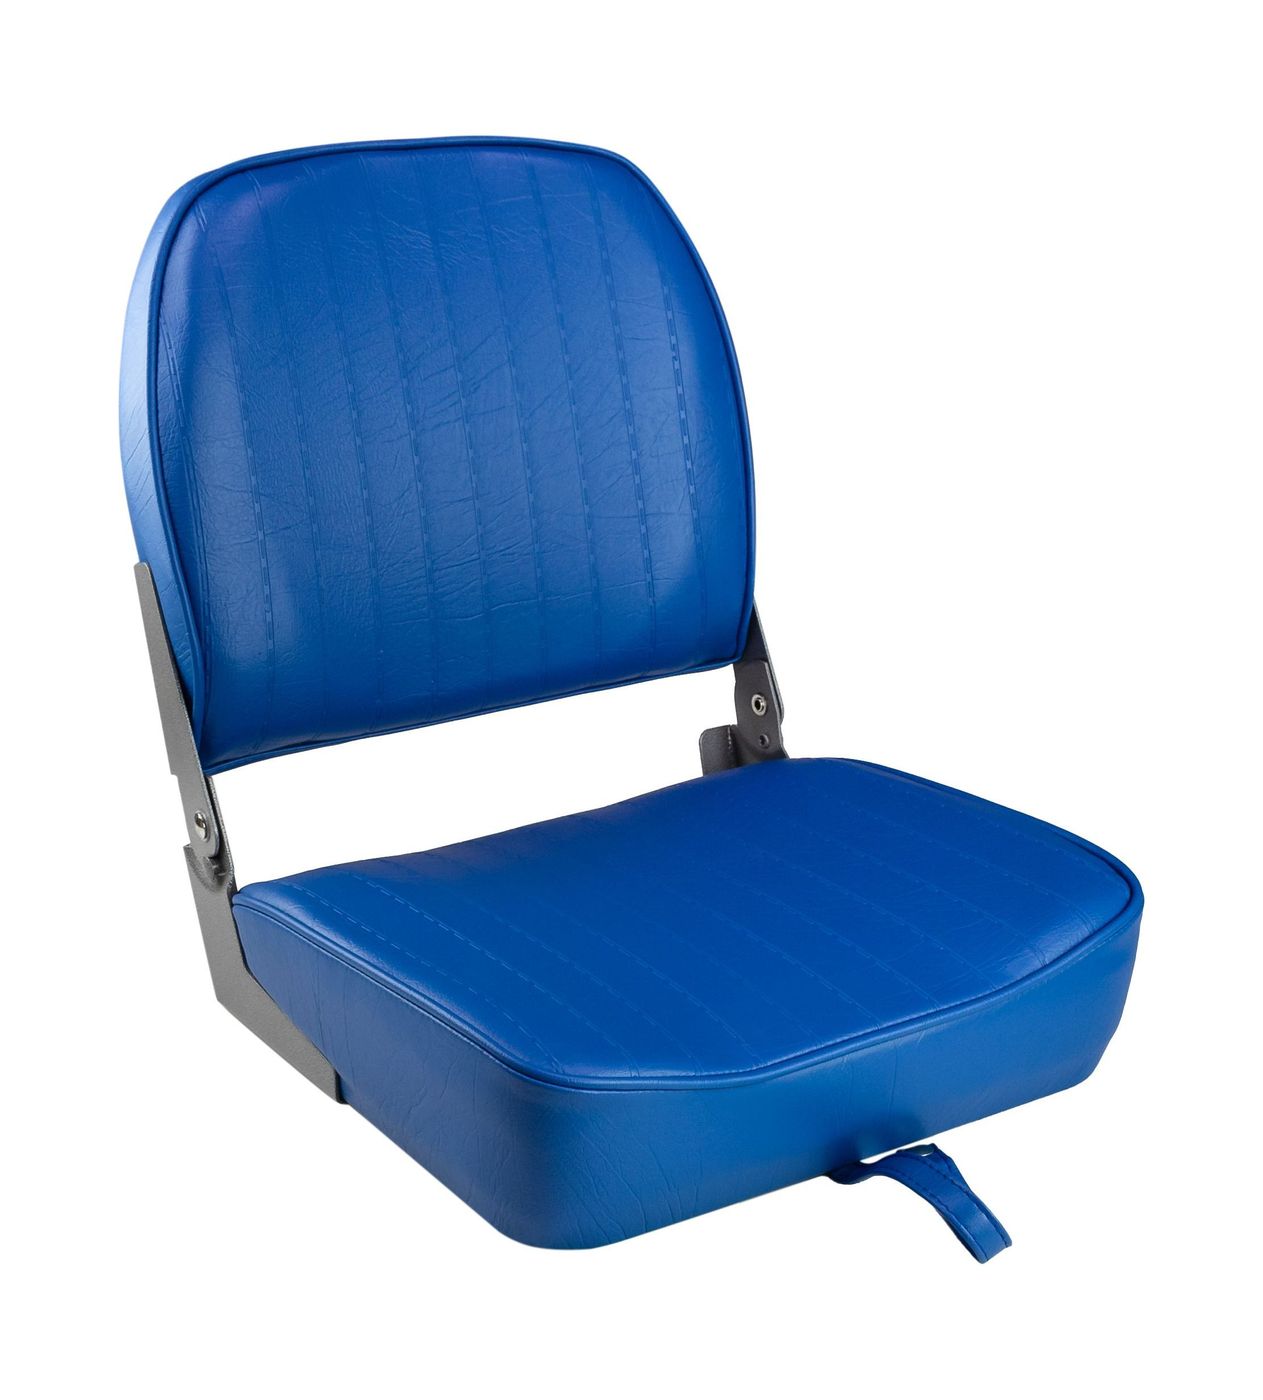 Кресло складное мягкое ECONOMY с низкой спинкой, цвет синий 1040621 кресло мягкое складное обивка винил серый синий marine rocket 75109gb mr